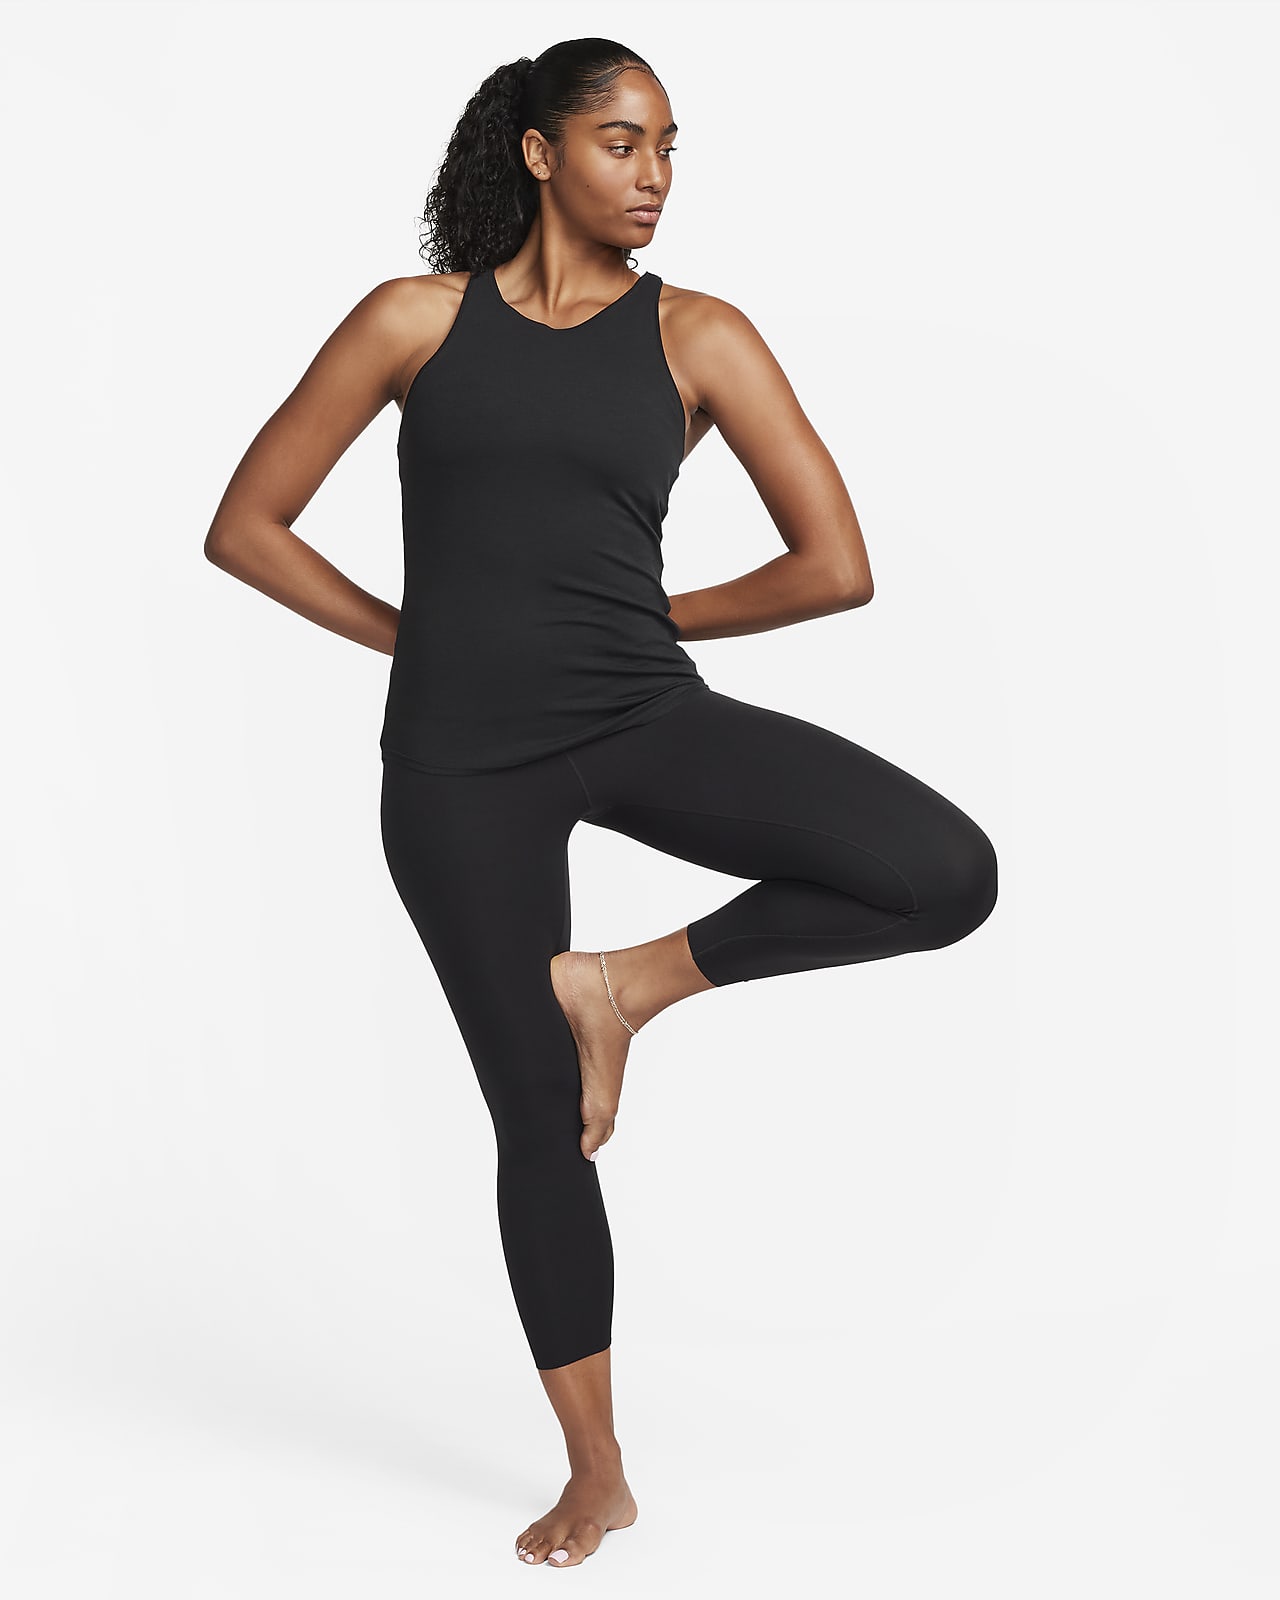 Nike Women's Yoga Luxe Long Tank Top